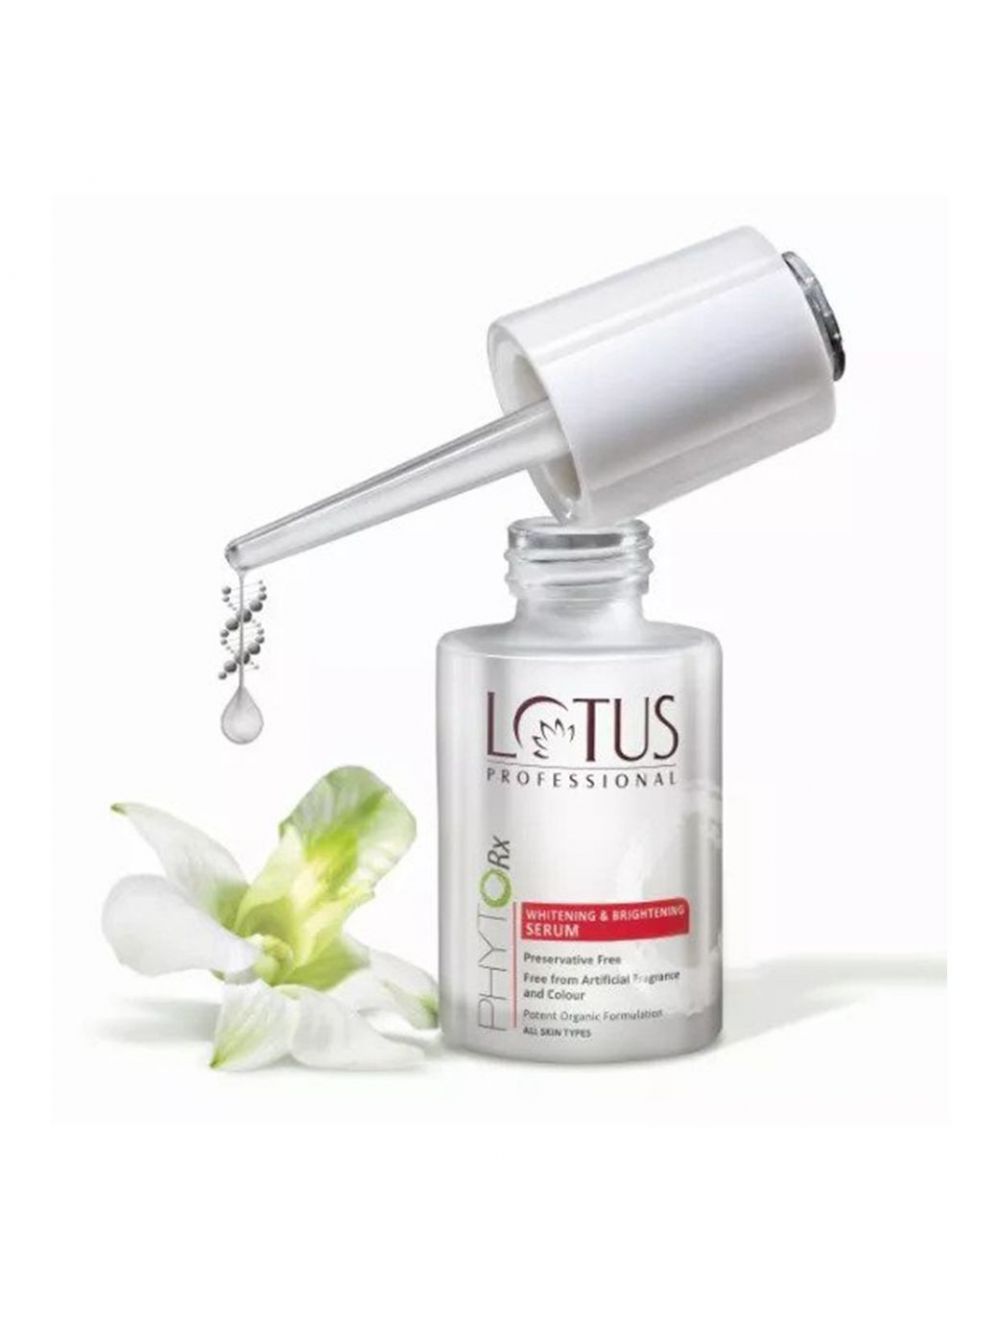 Lotus Professional PhytoRx Whitening & Brightening Serum (30ml)